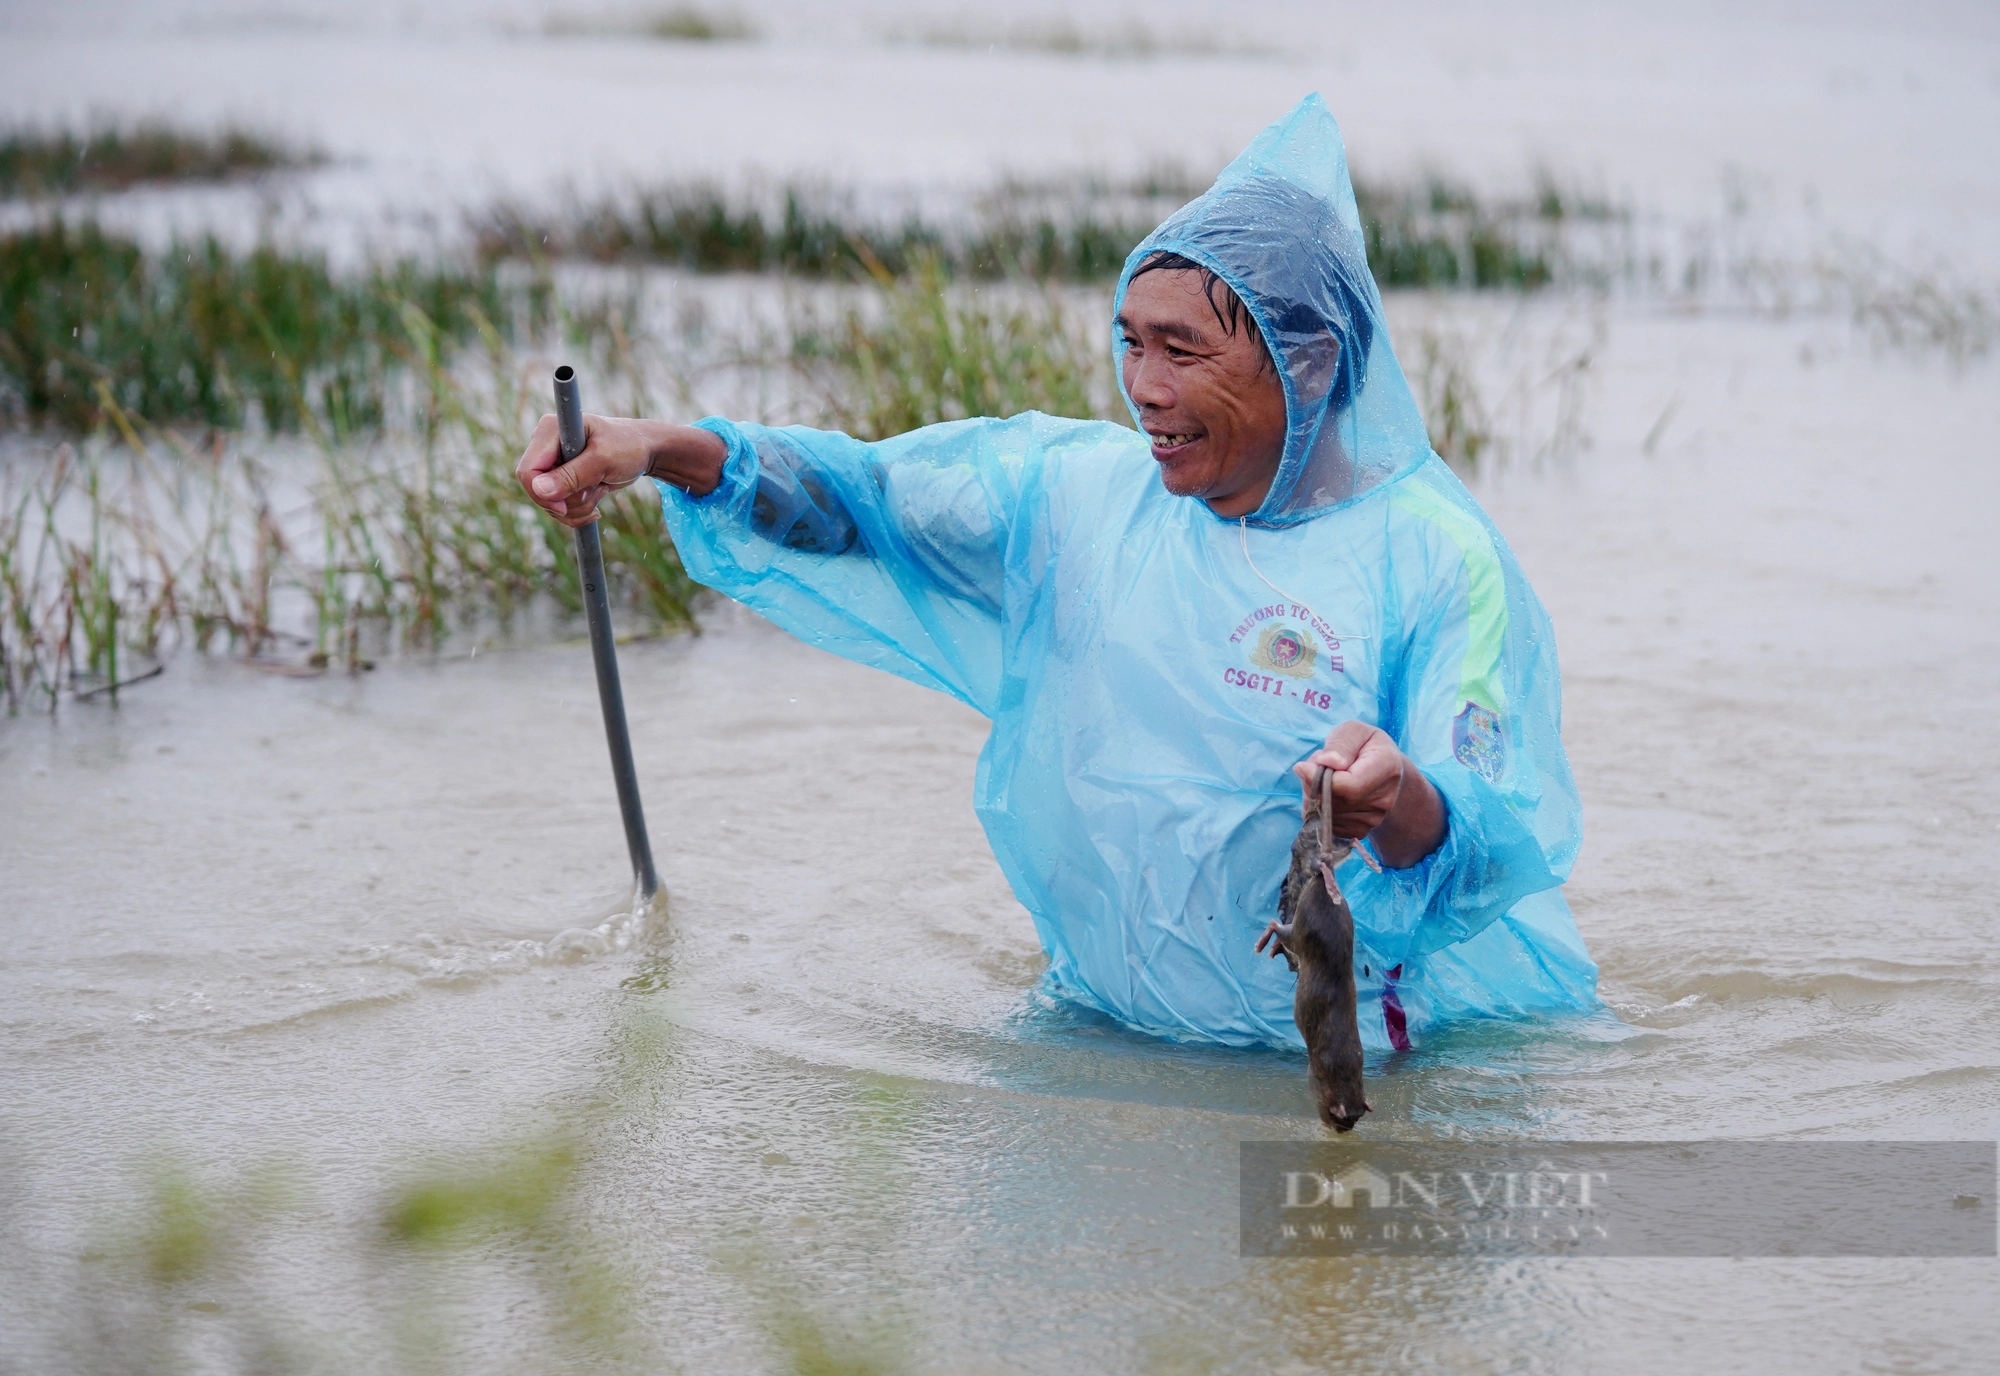 Cả làng ở Hà Tĩnh “đội mưa” cùng nhau lội nước đi bắt chuột bảo vệ mùa màng - Ảnh 9.